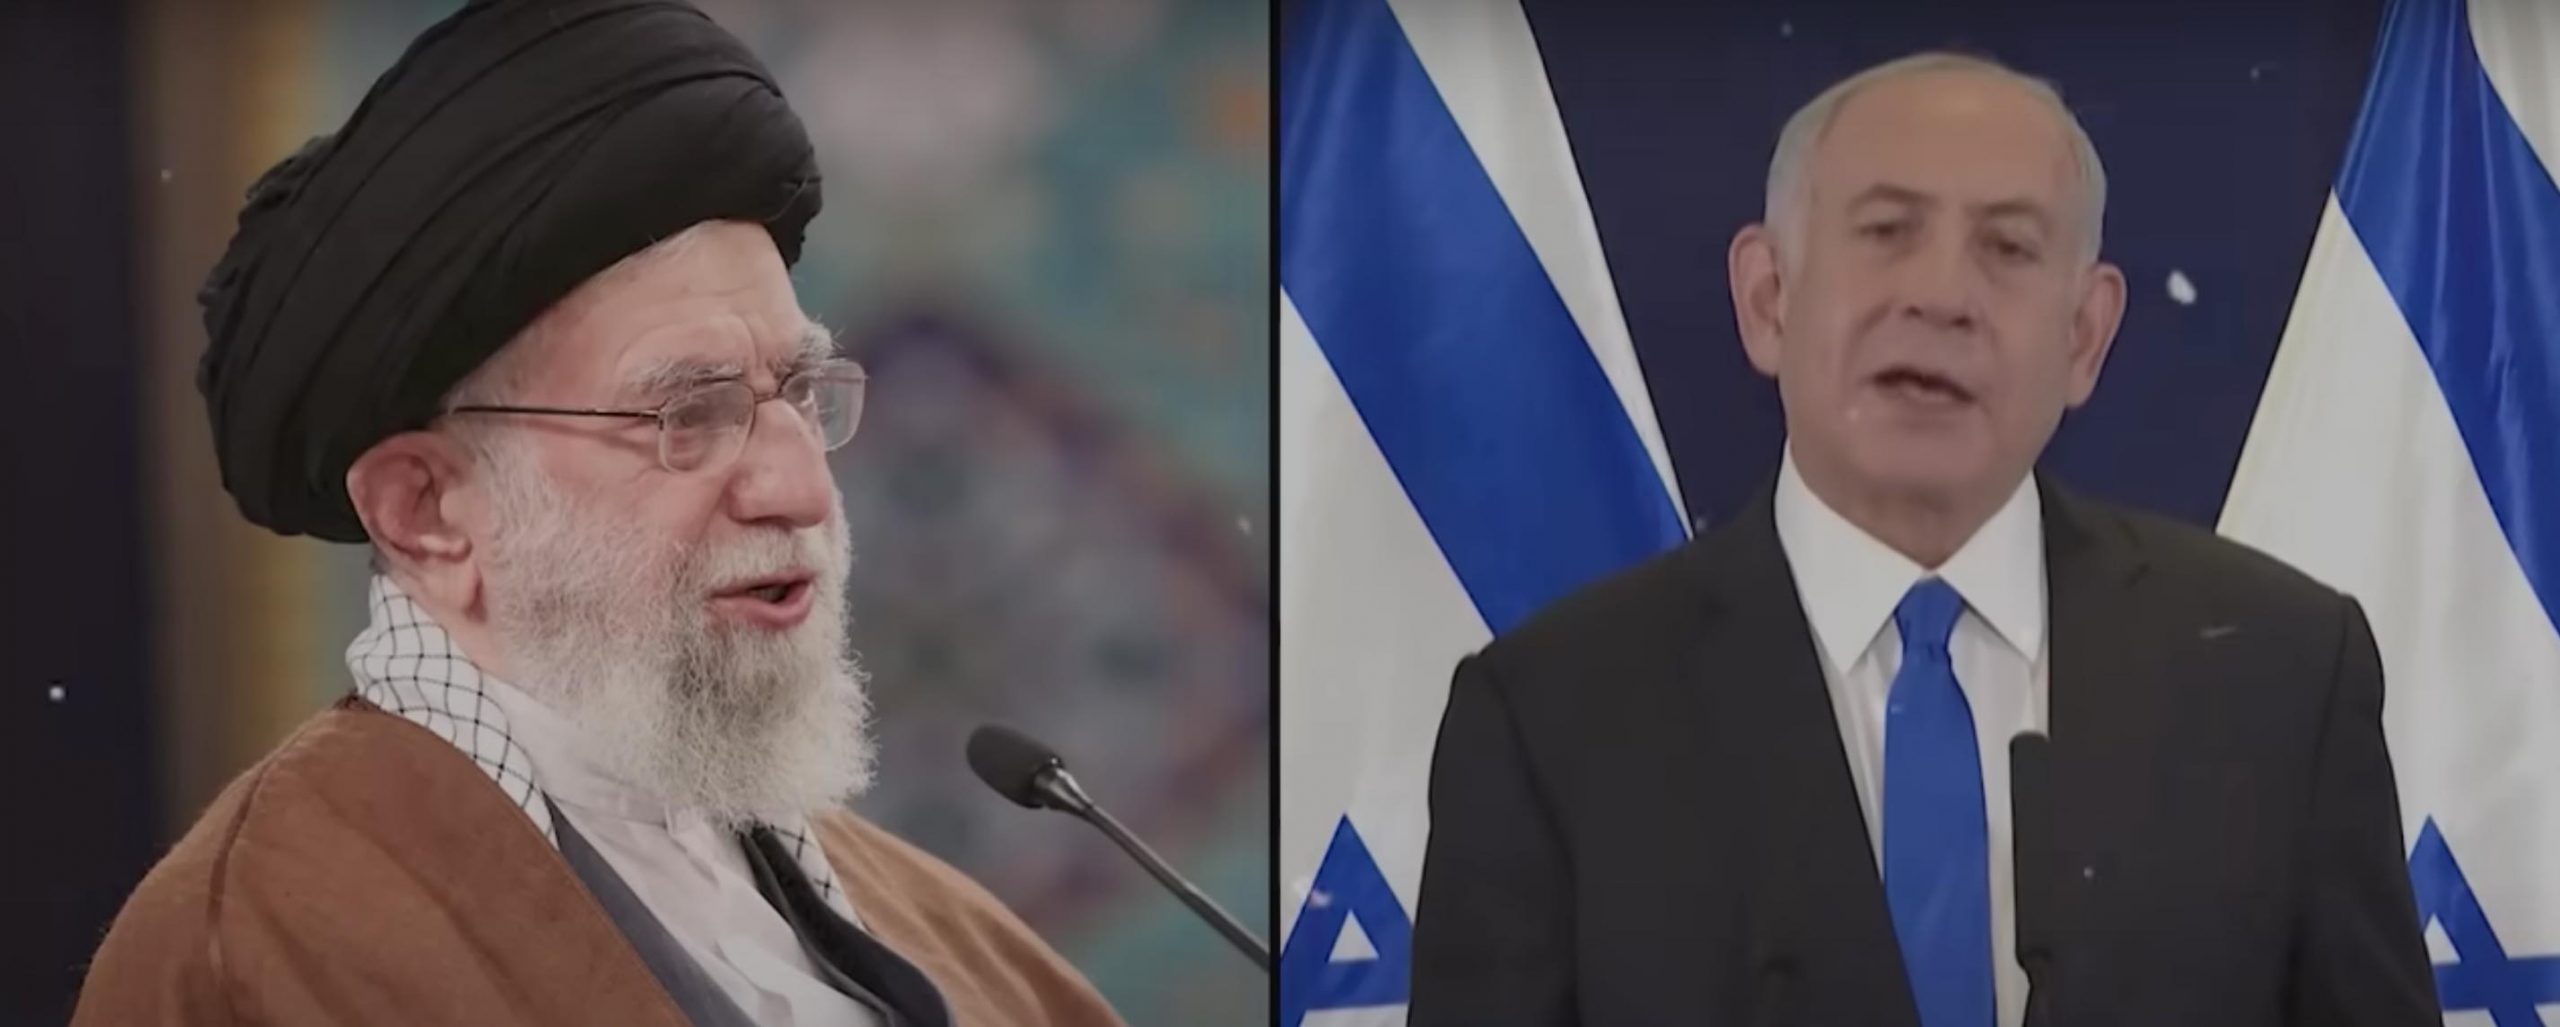 Nella foto, l'ayatollah Ali Khamenei, massima autorità dell'Iran, e il primo ministro di Israele,Benjamin Netanyahu.